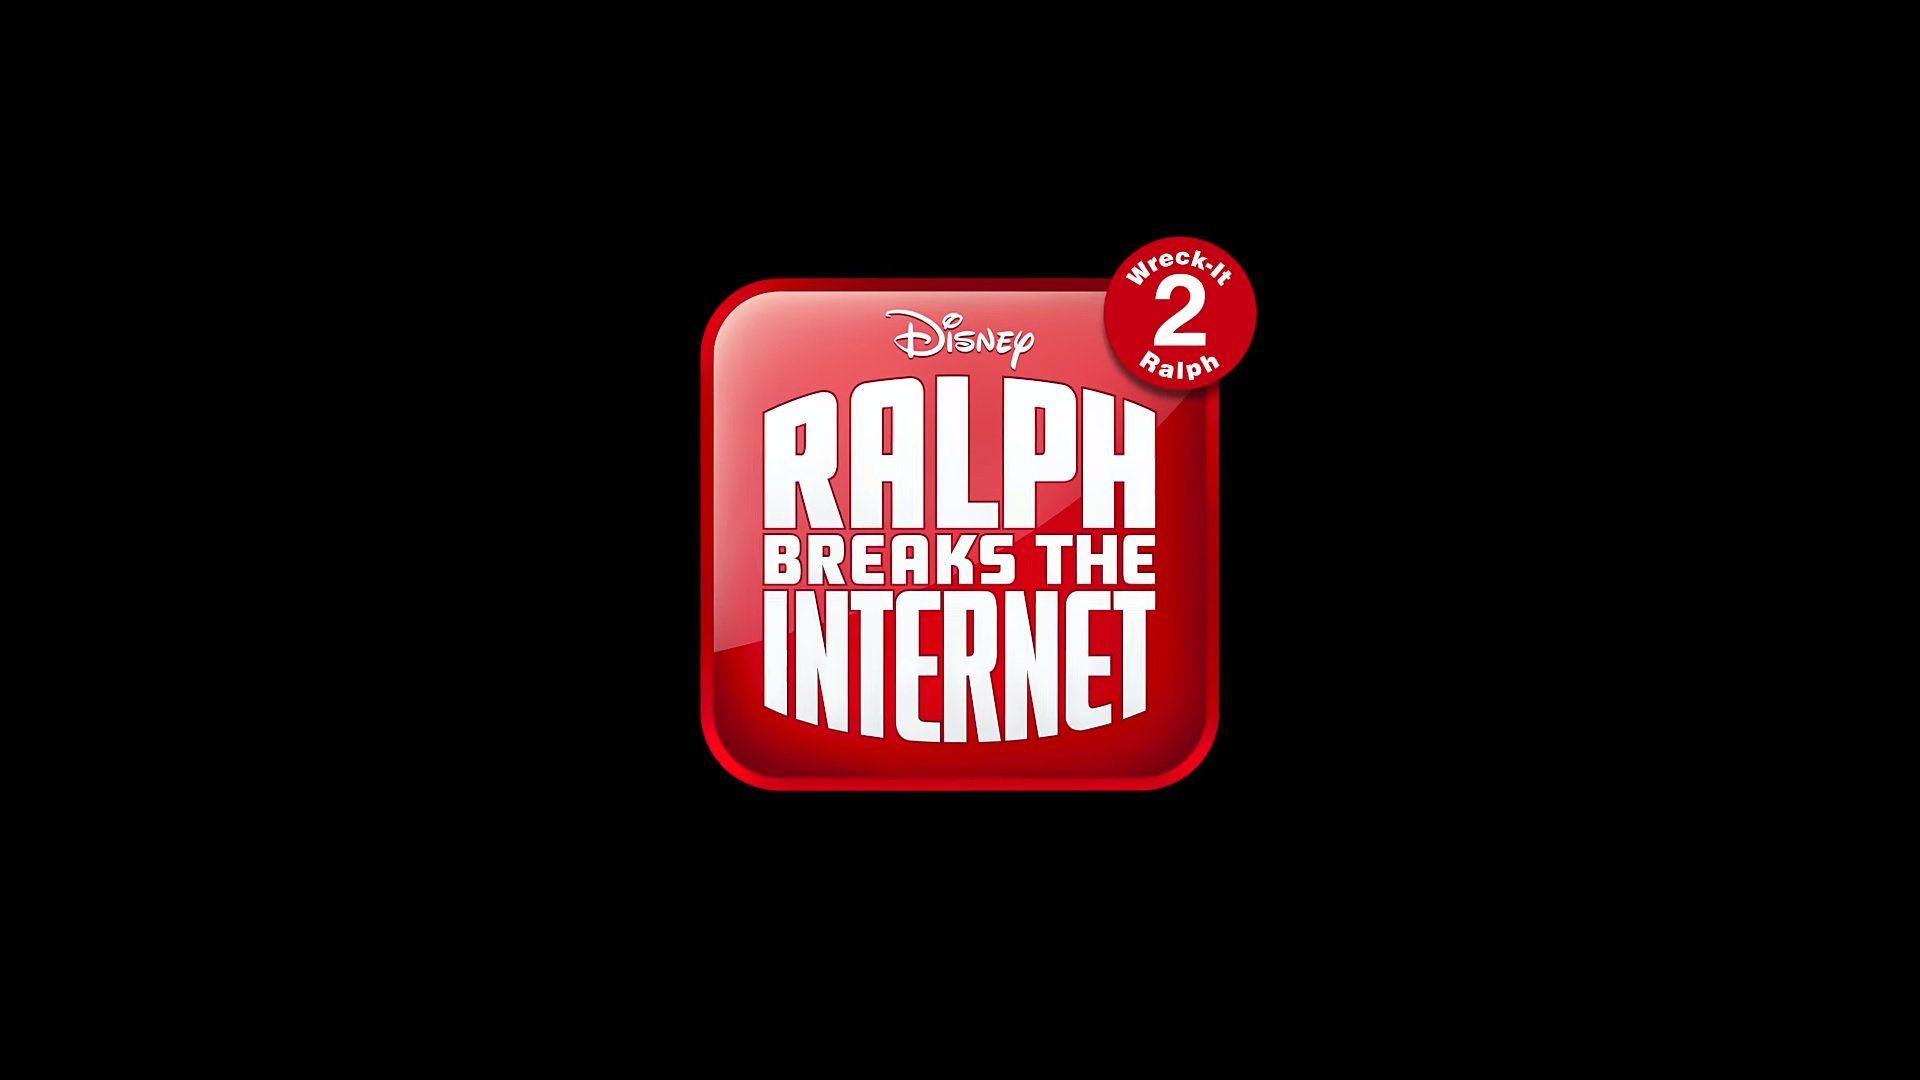 Wreck it Ralph Breaks the Internet